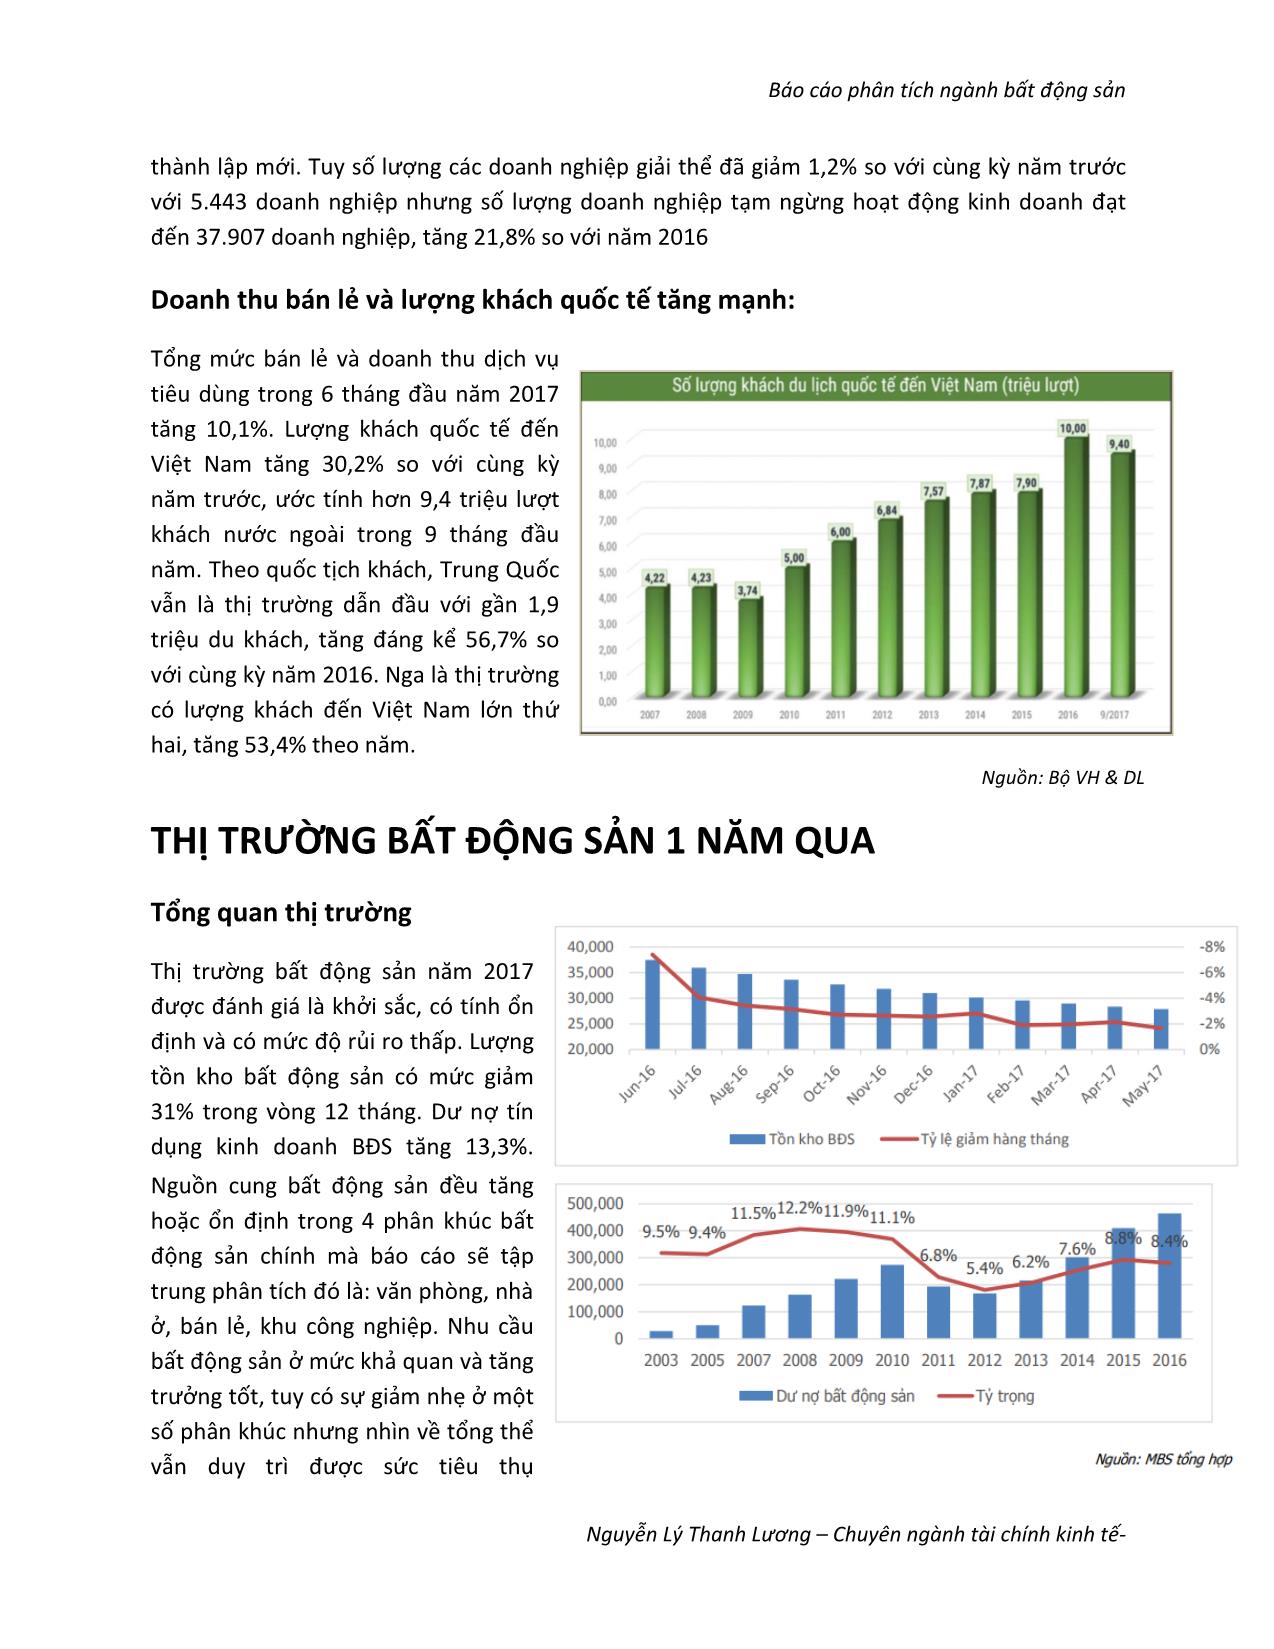 Báo cáo phân tích ngành bất động sản - Nguyễn Lý Thanh Lương trang 4